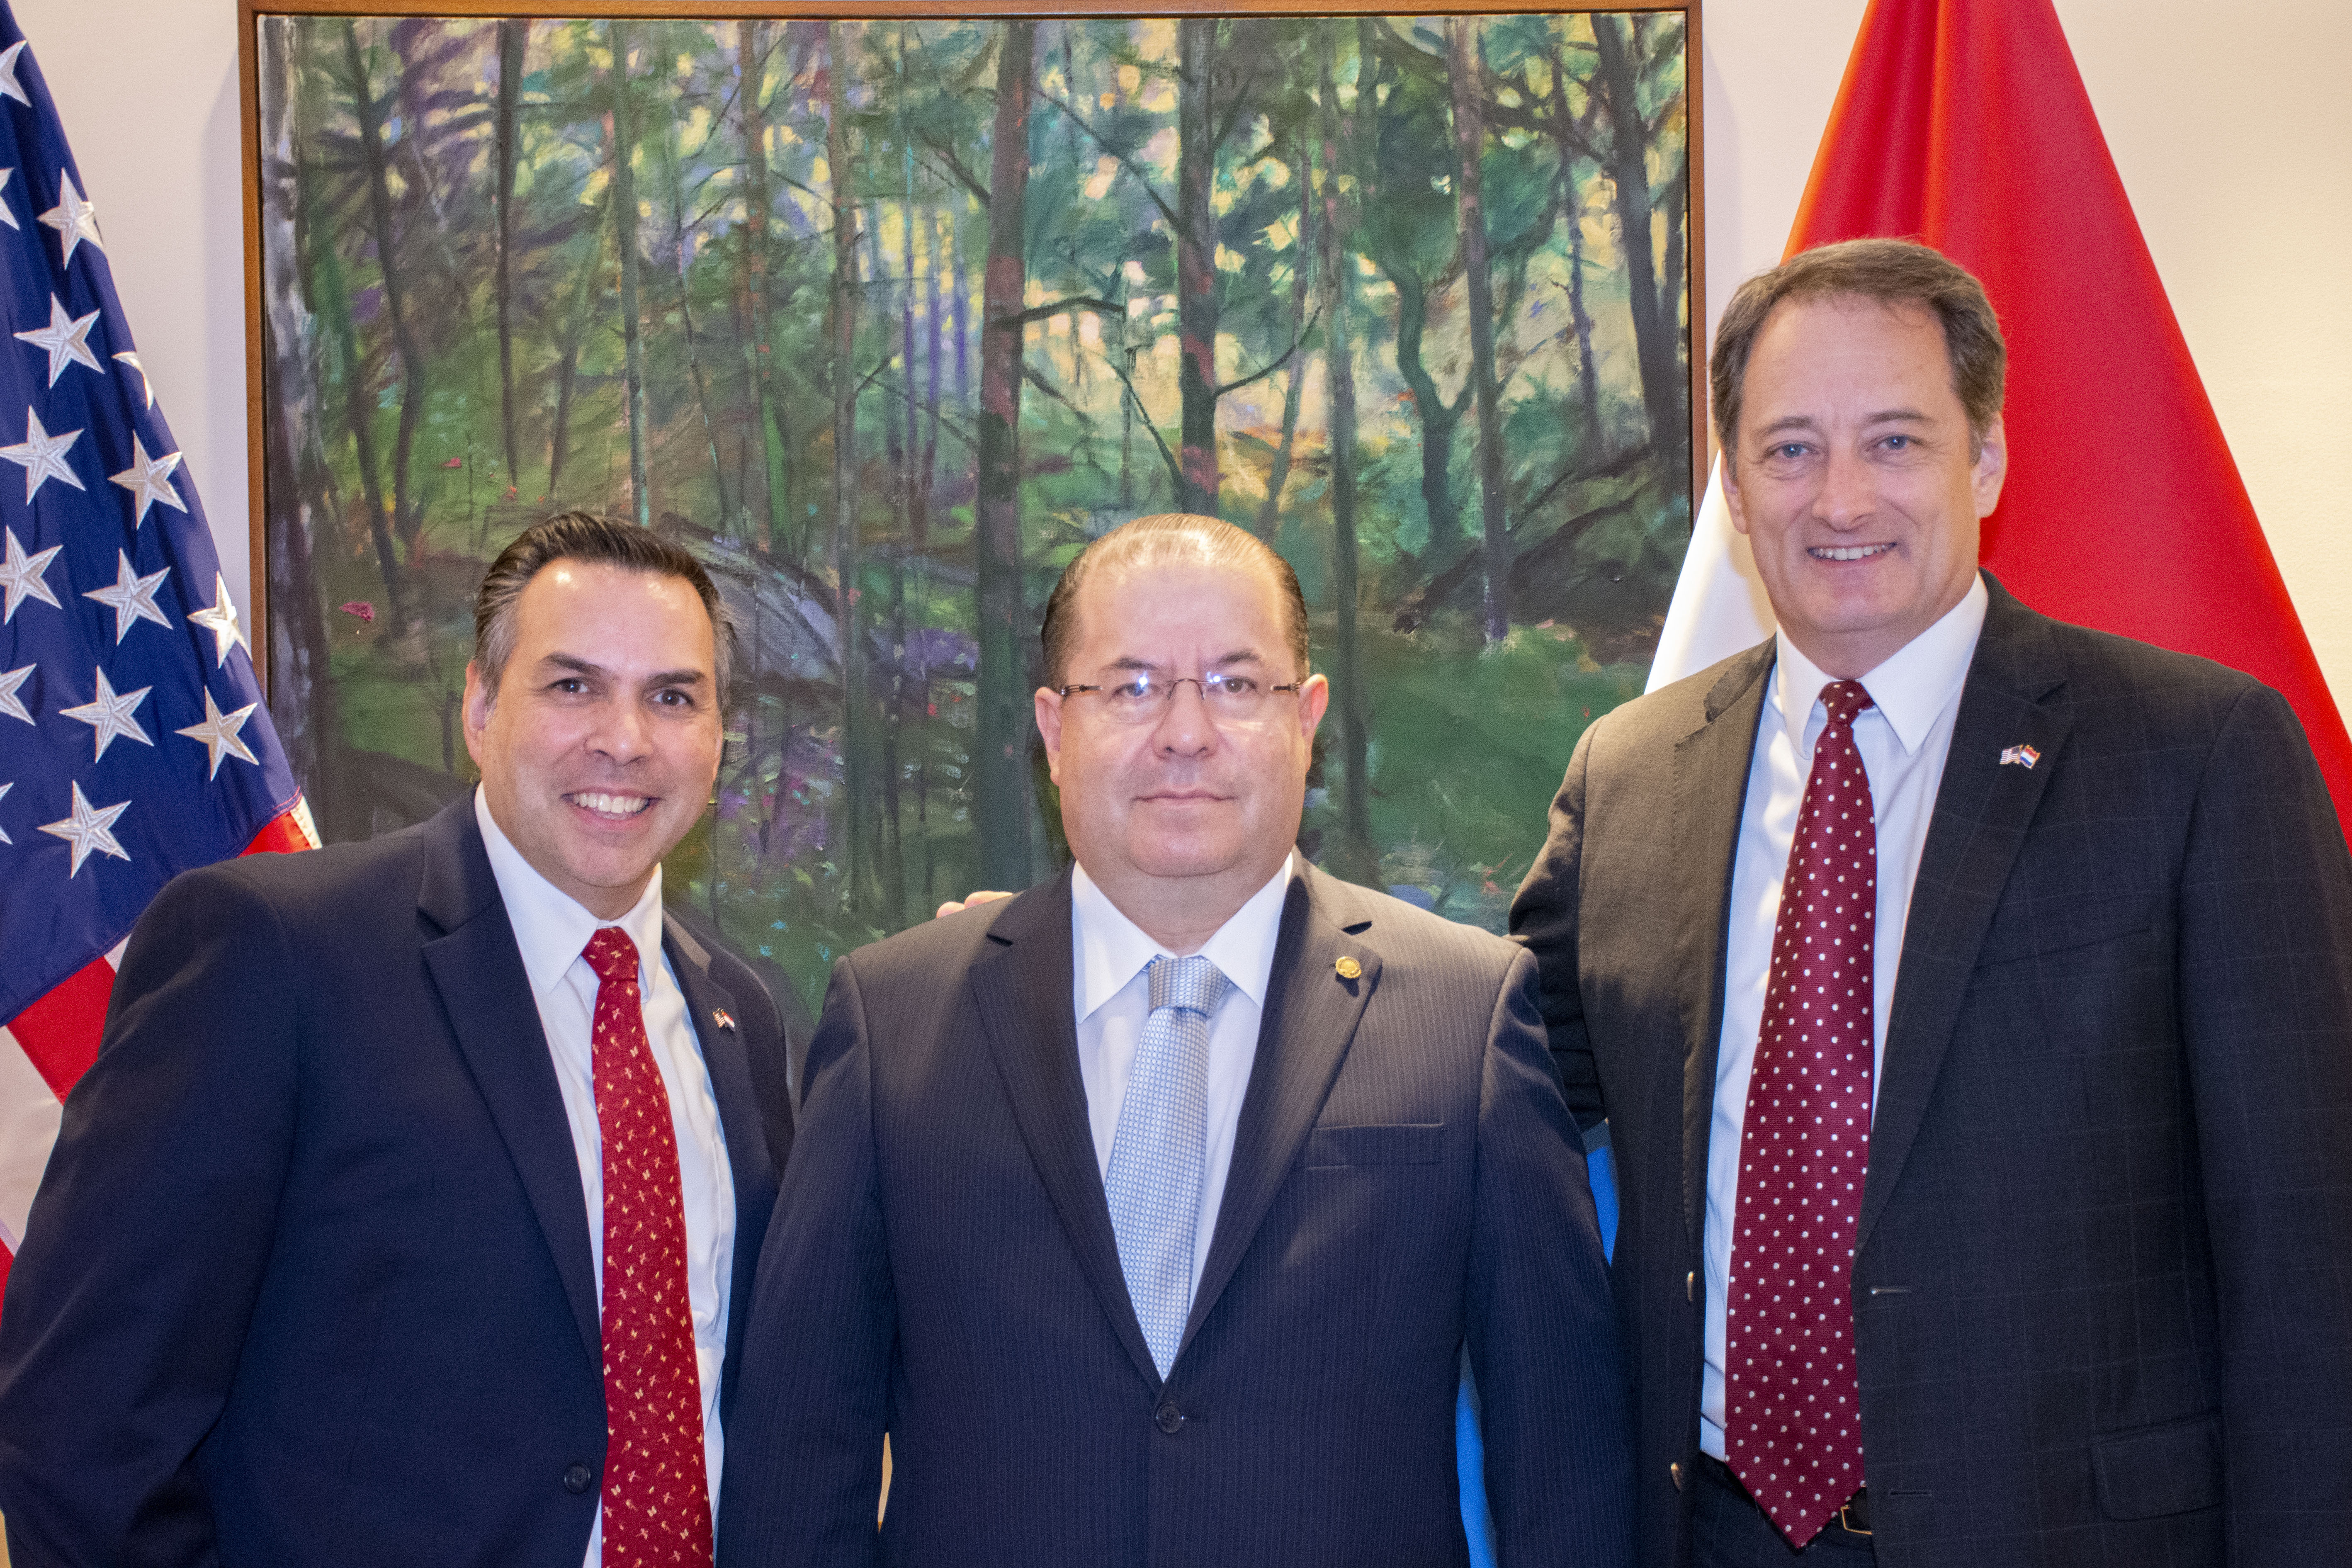 El Representante de la OEA en el Paraguay, Embajador Diego Paz, atendió la invitación del Embajador de los Estados Unidos de América Lee McClenny a la recepción en honor del nuevo Ministro Consejero de la Embajada de los Estados Unidos de América, Joseph Salazar.(8 de agosto de 2019)